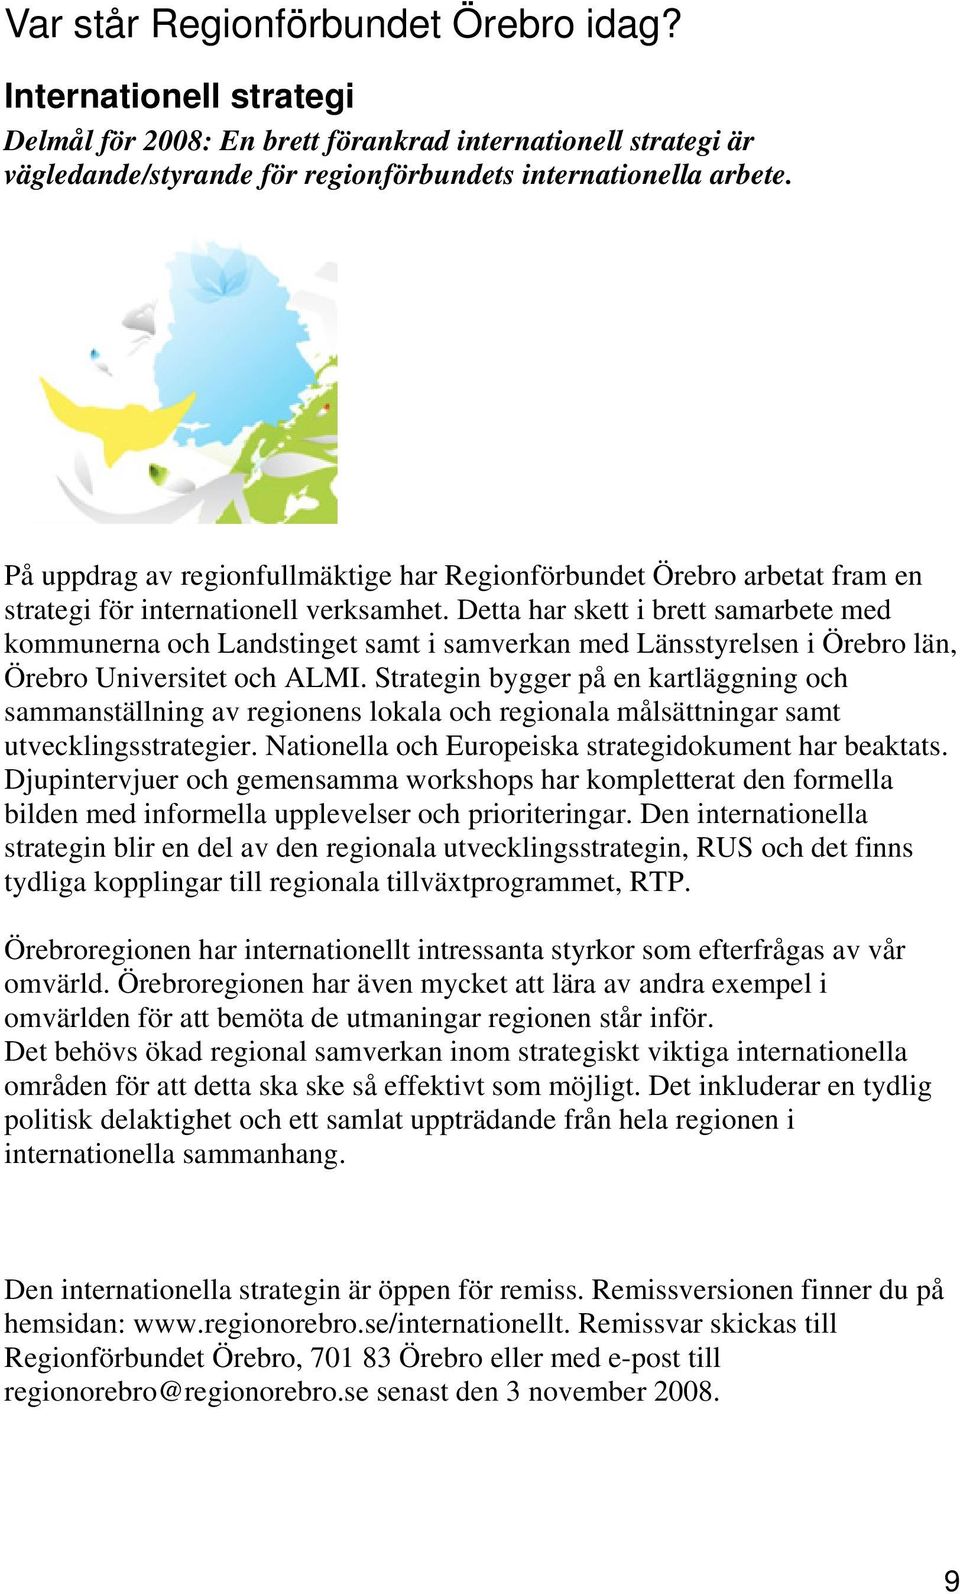 Detta har skett i brett samarbete med kommunerna och Landstinget samt i samverkan med Länsstyrelsen i Örebro län, Örebro Universitet och ALMI.